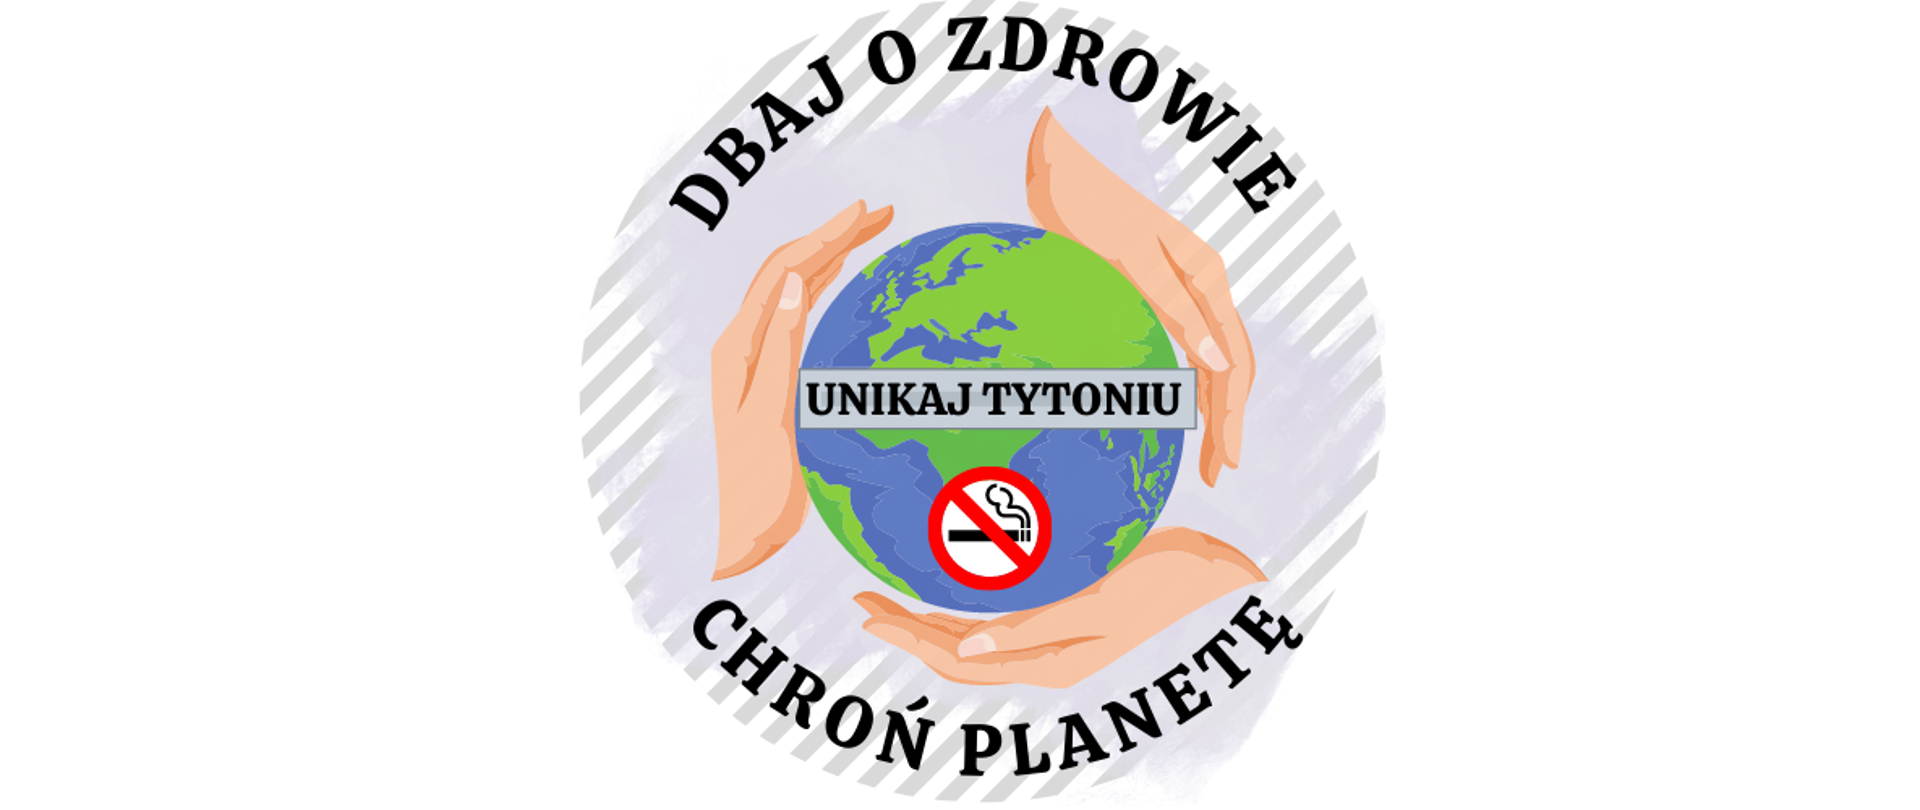 Bezowe_i_Czarne_Proste_i_Okrągłe_Klinika_Zdrowia_Logo23